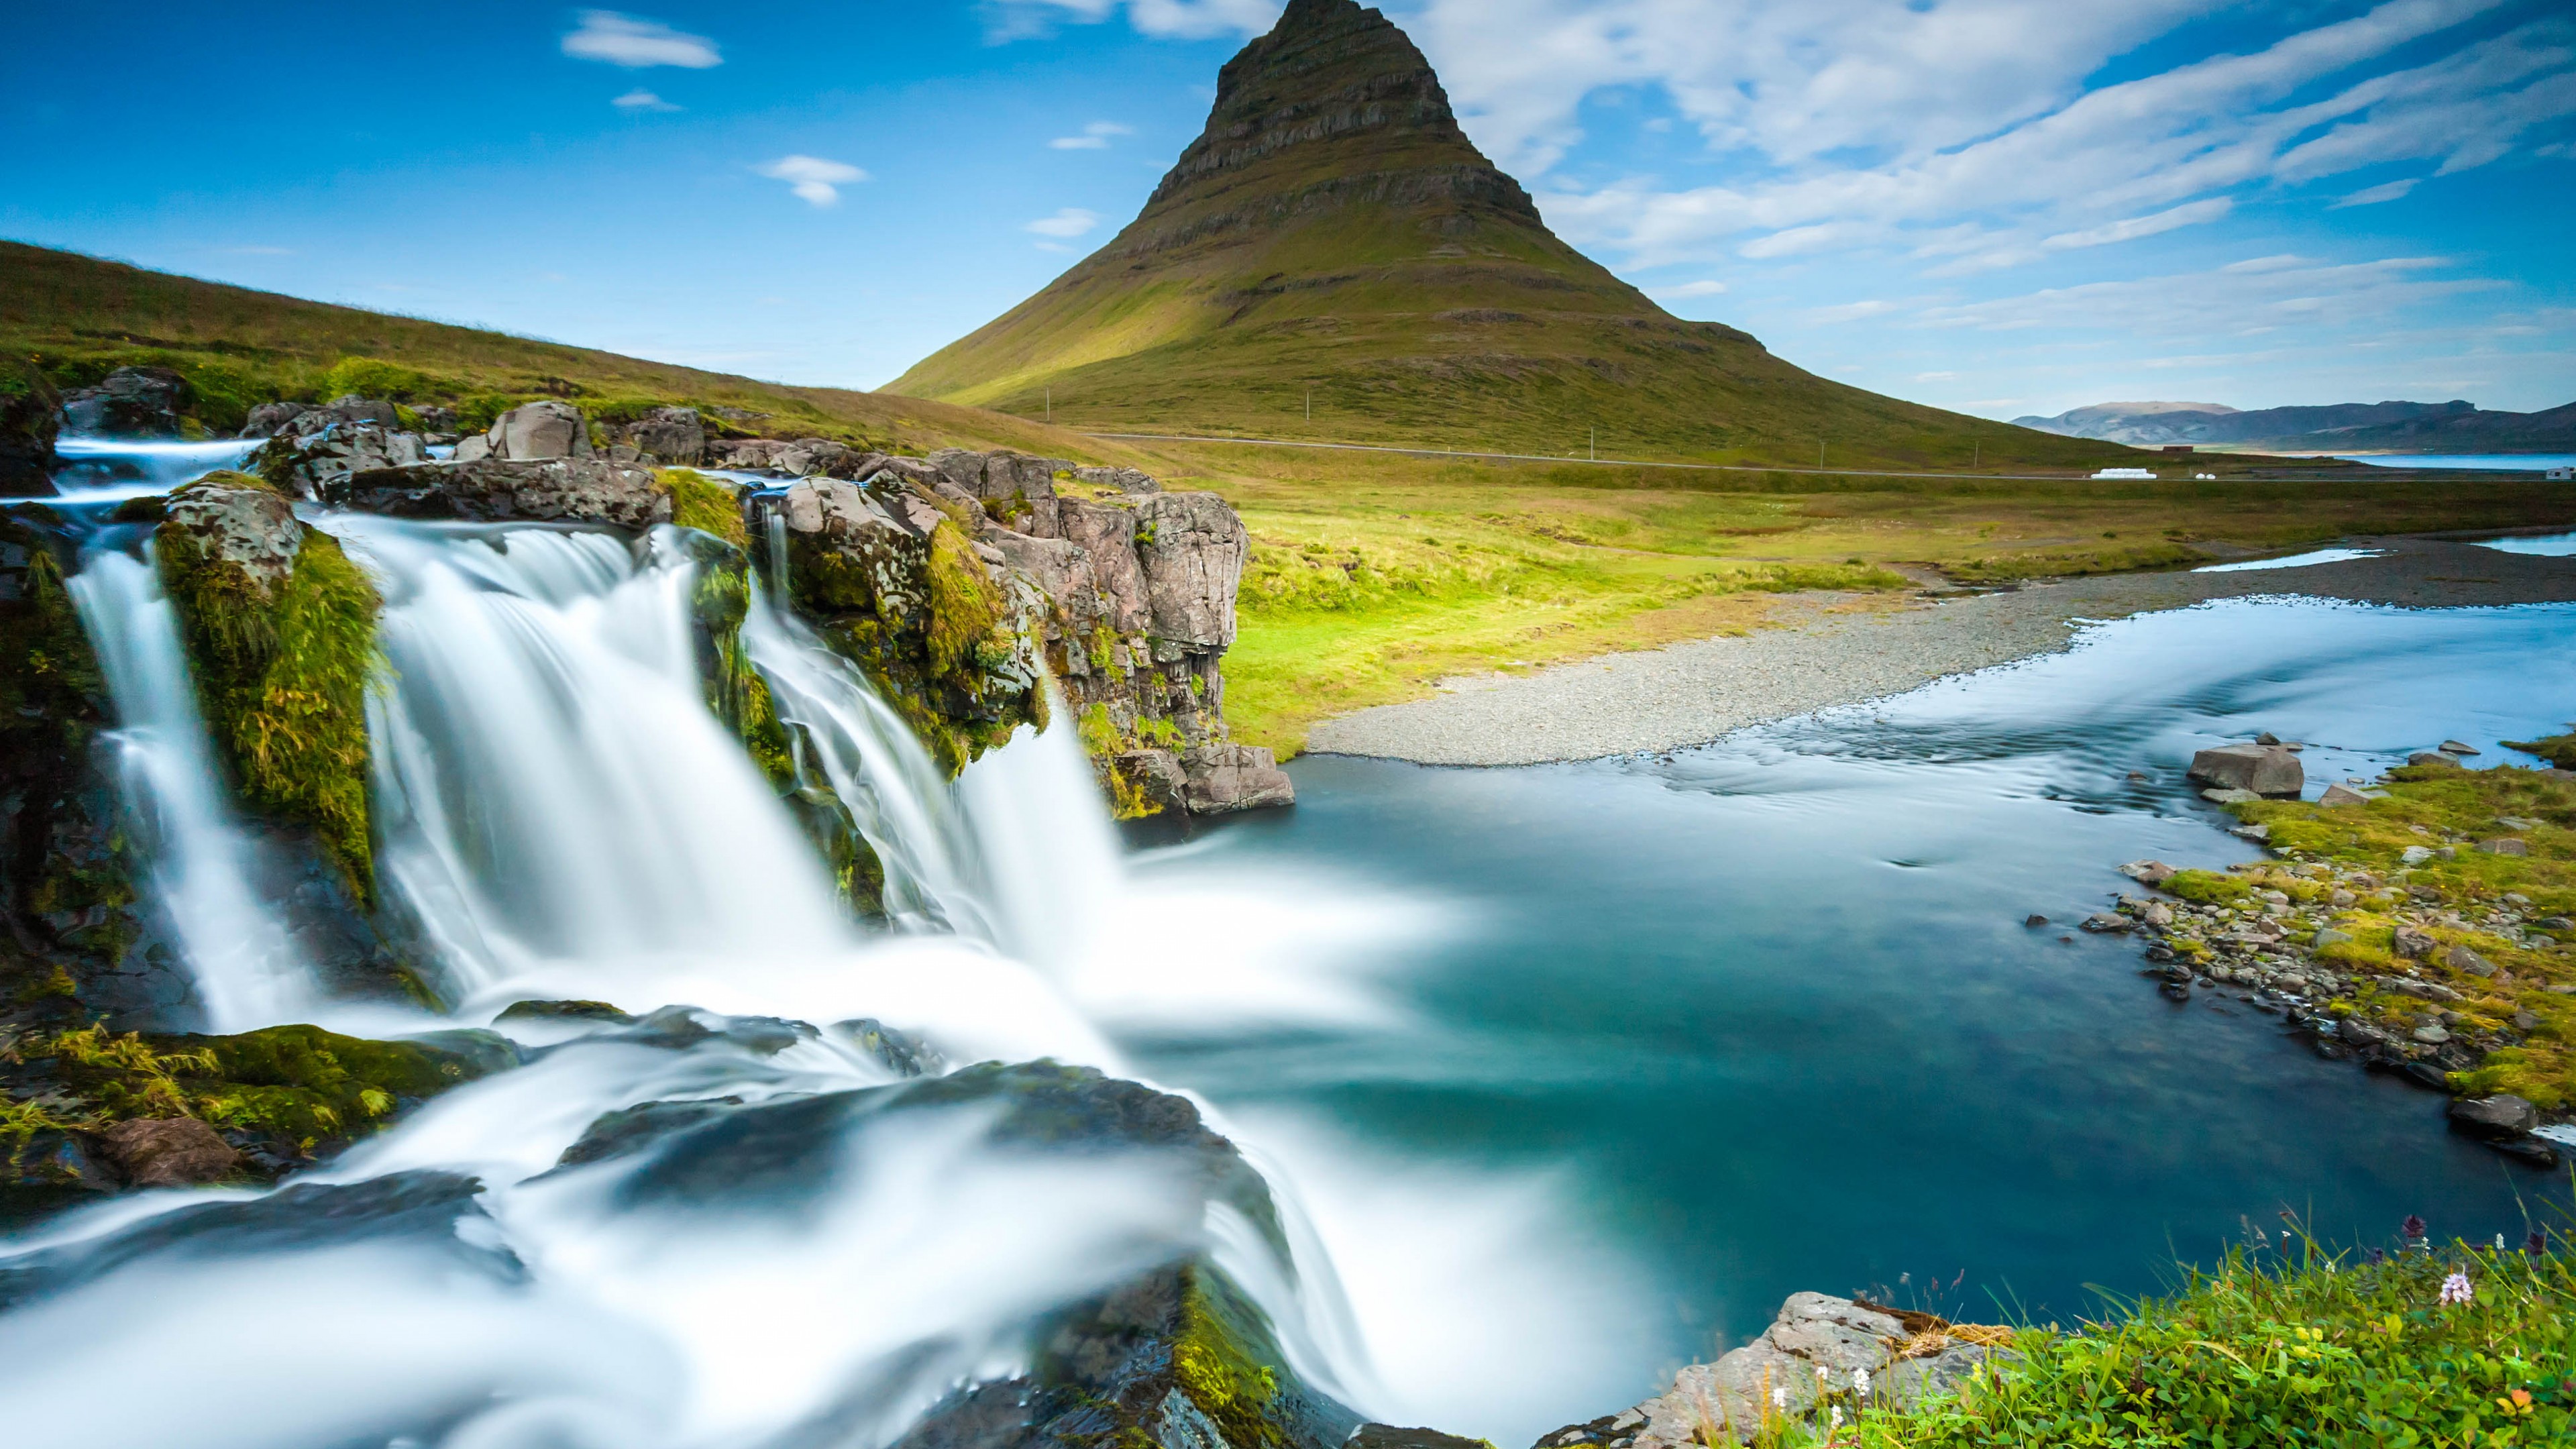 Rekjavik Waterfall